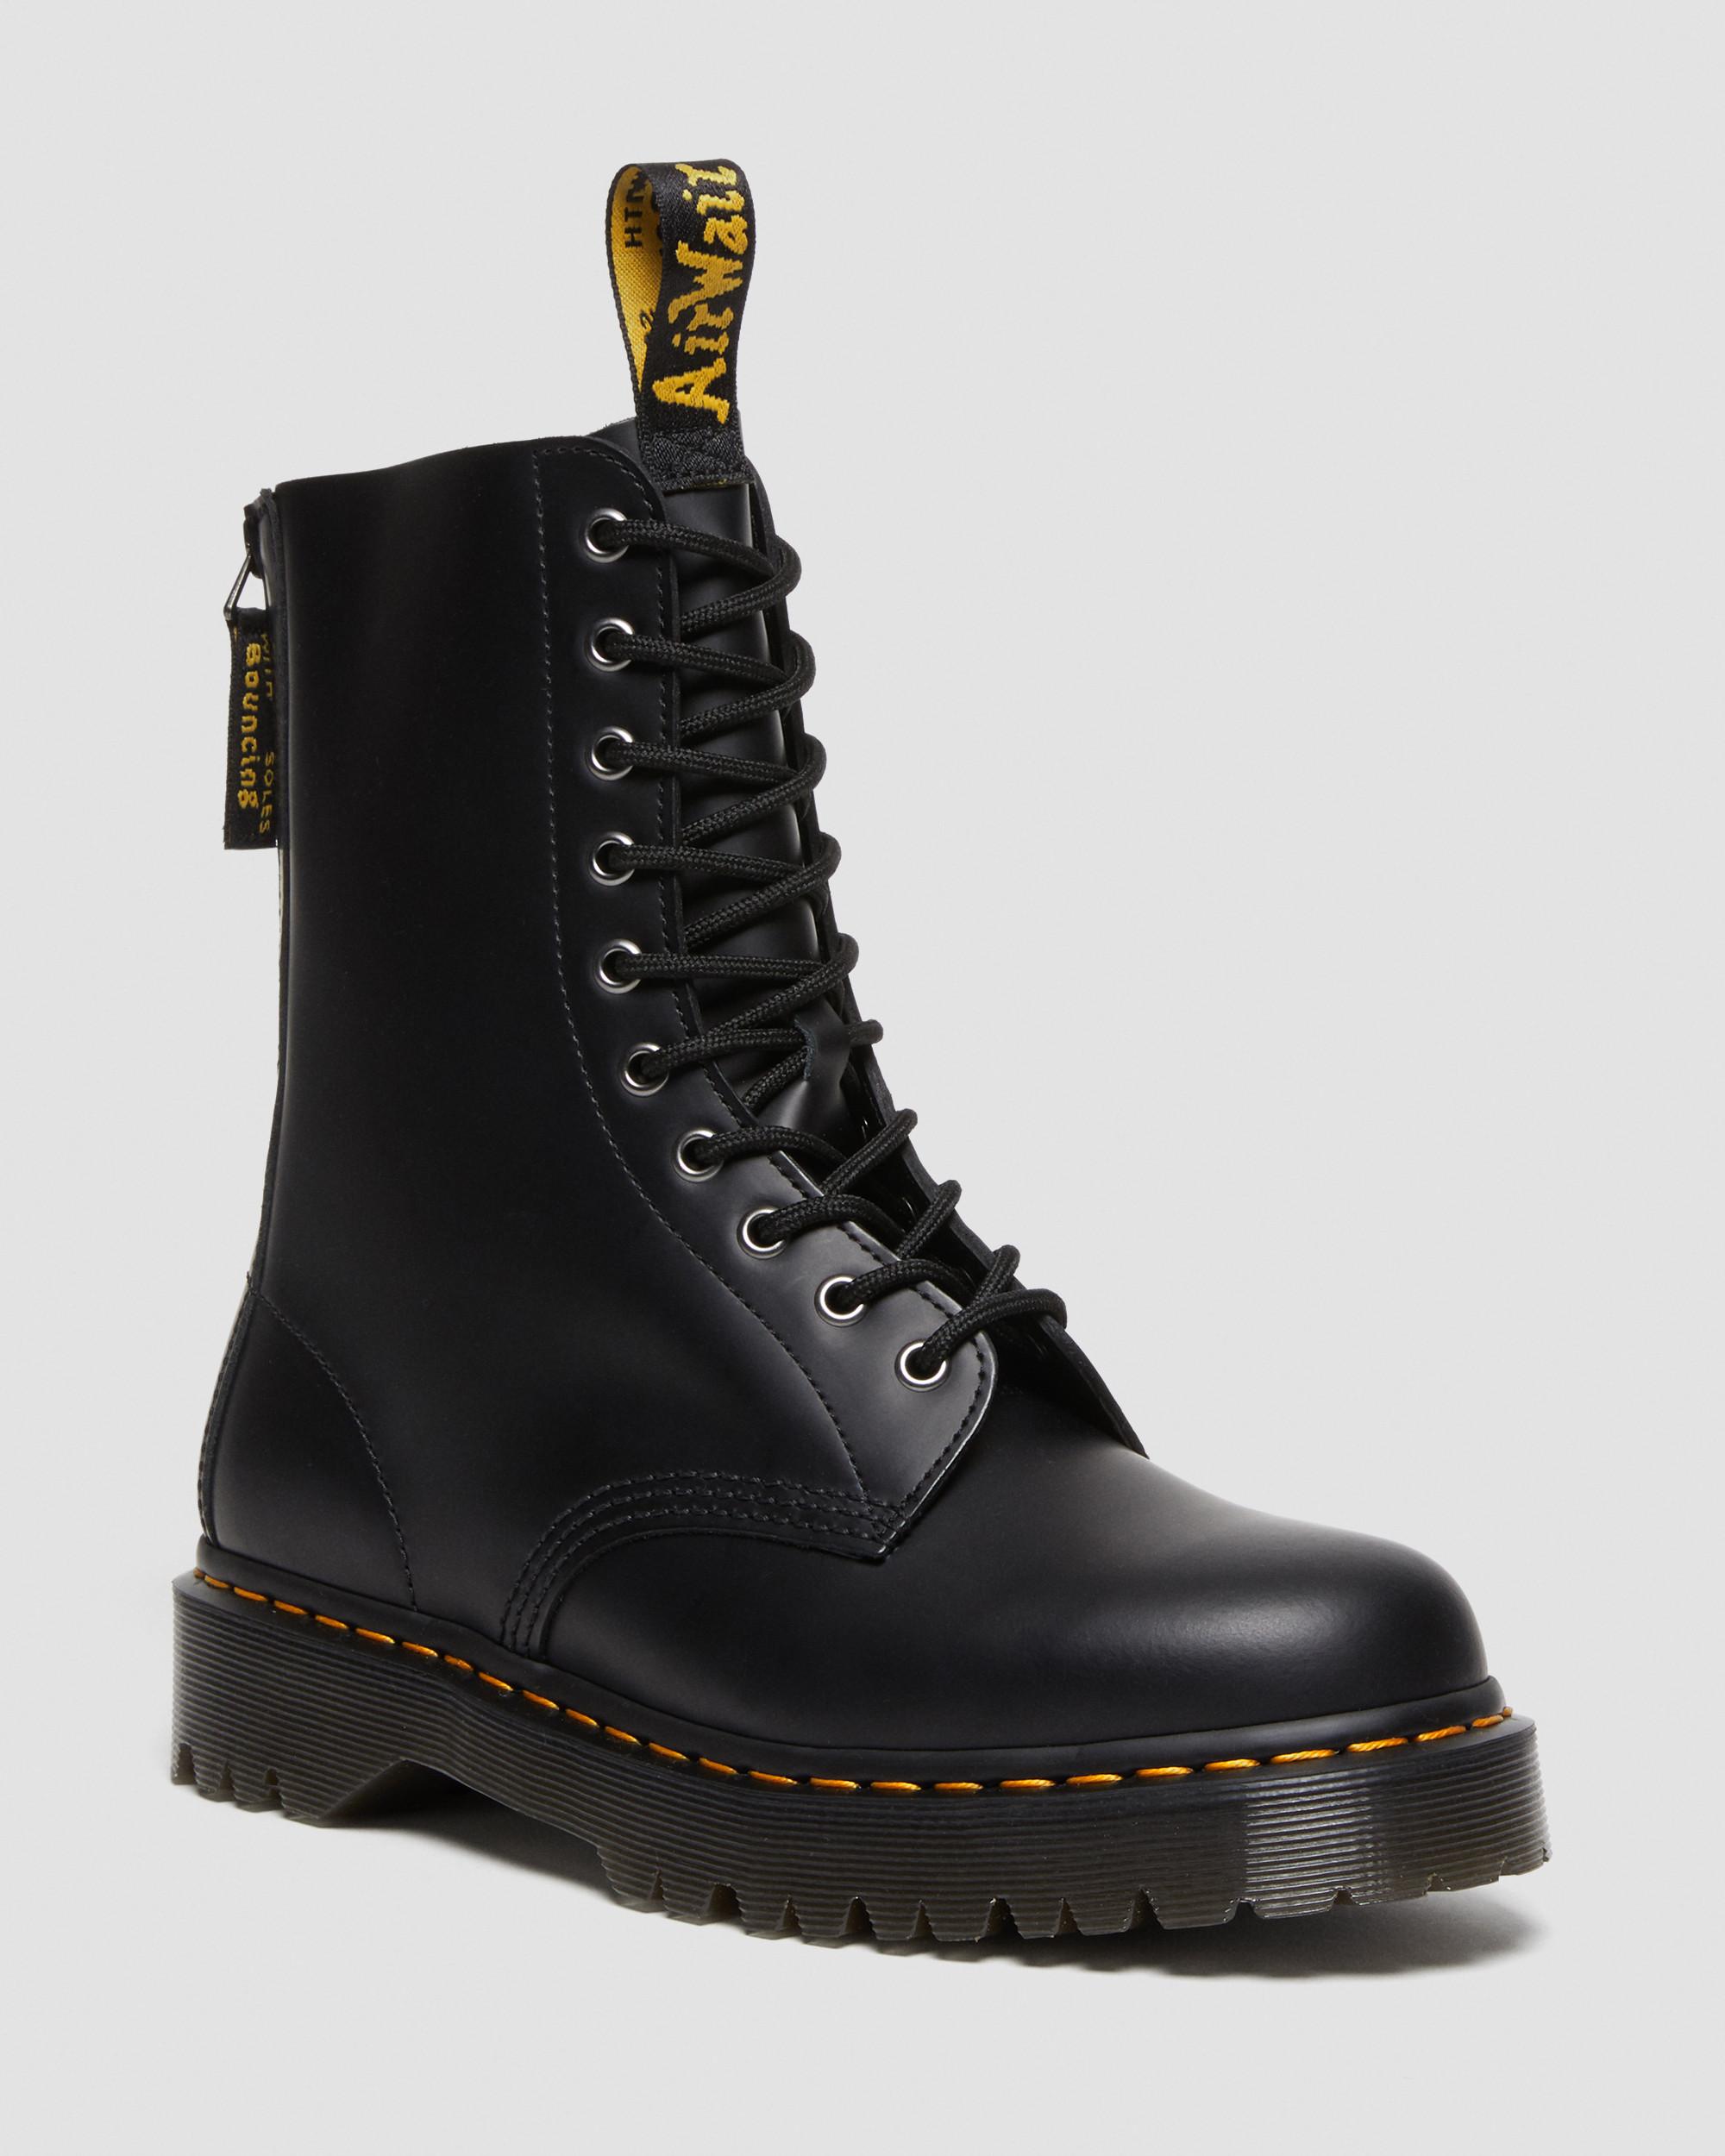 1490 Hi Bex Zip Leather Boots | Dr. Martens